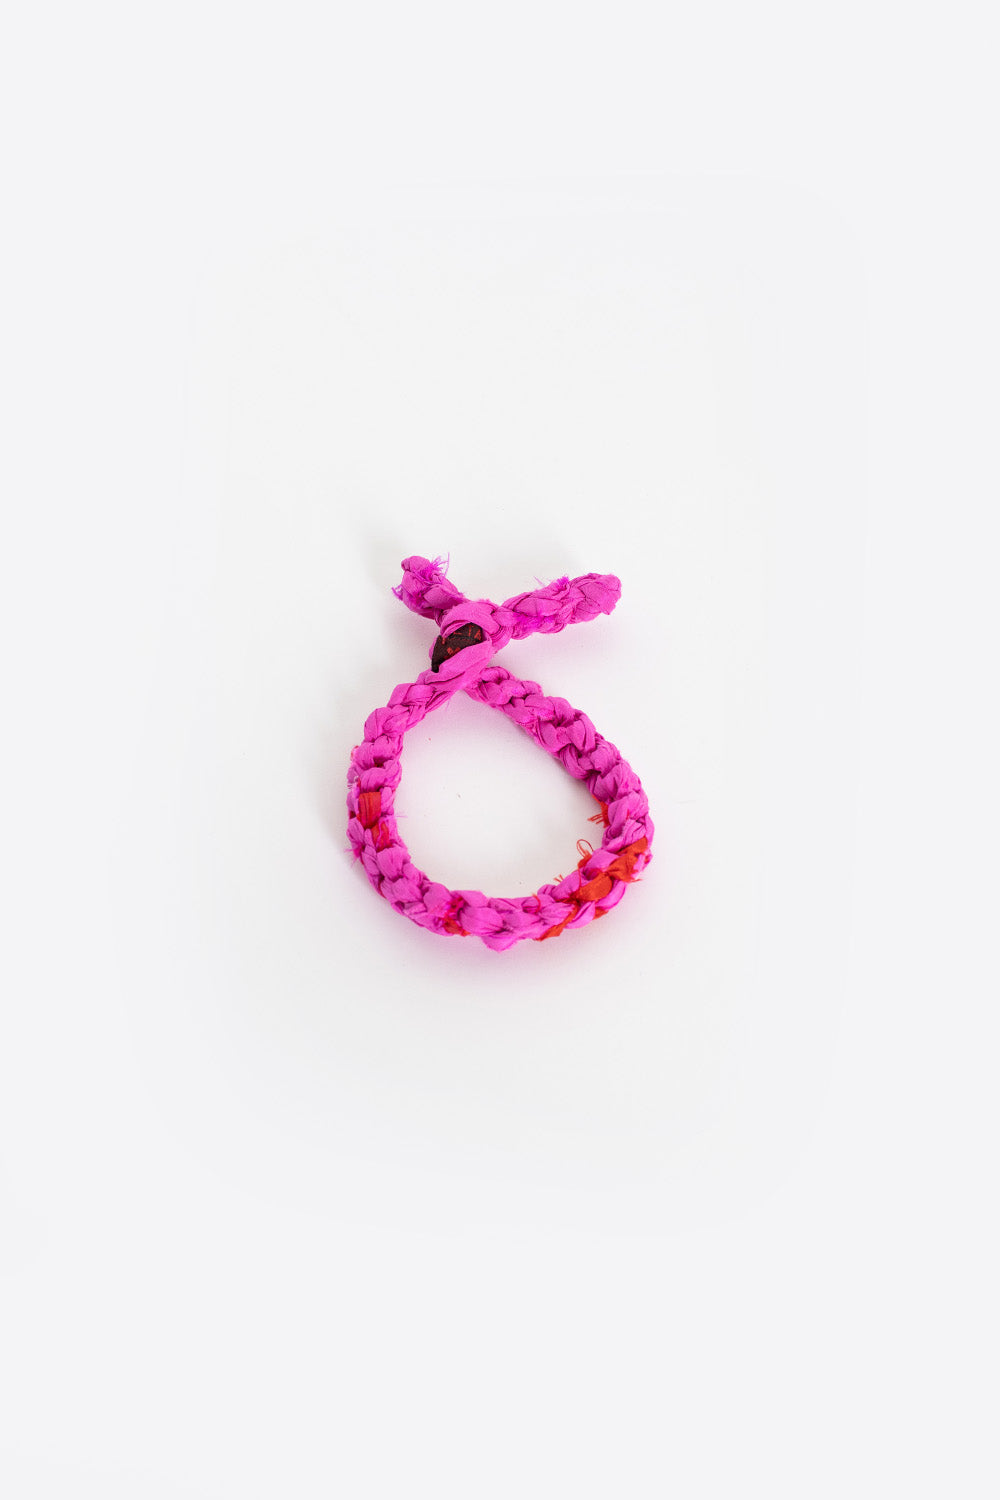 Silk Scoubi Bracelet Pink